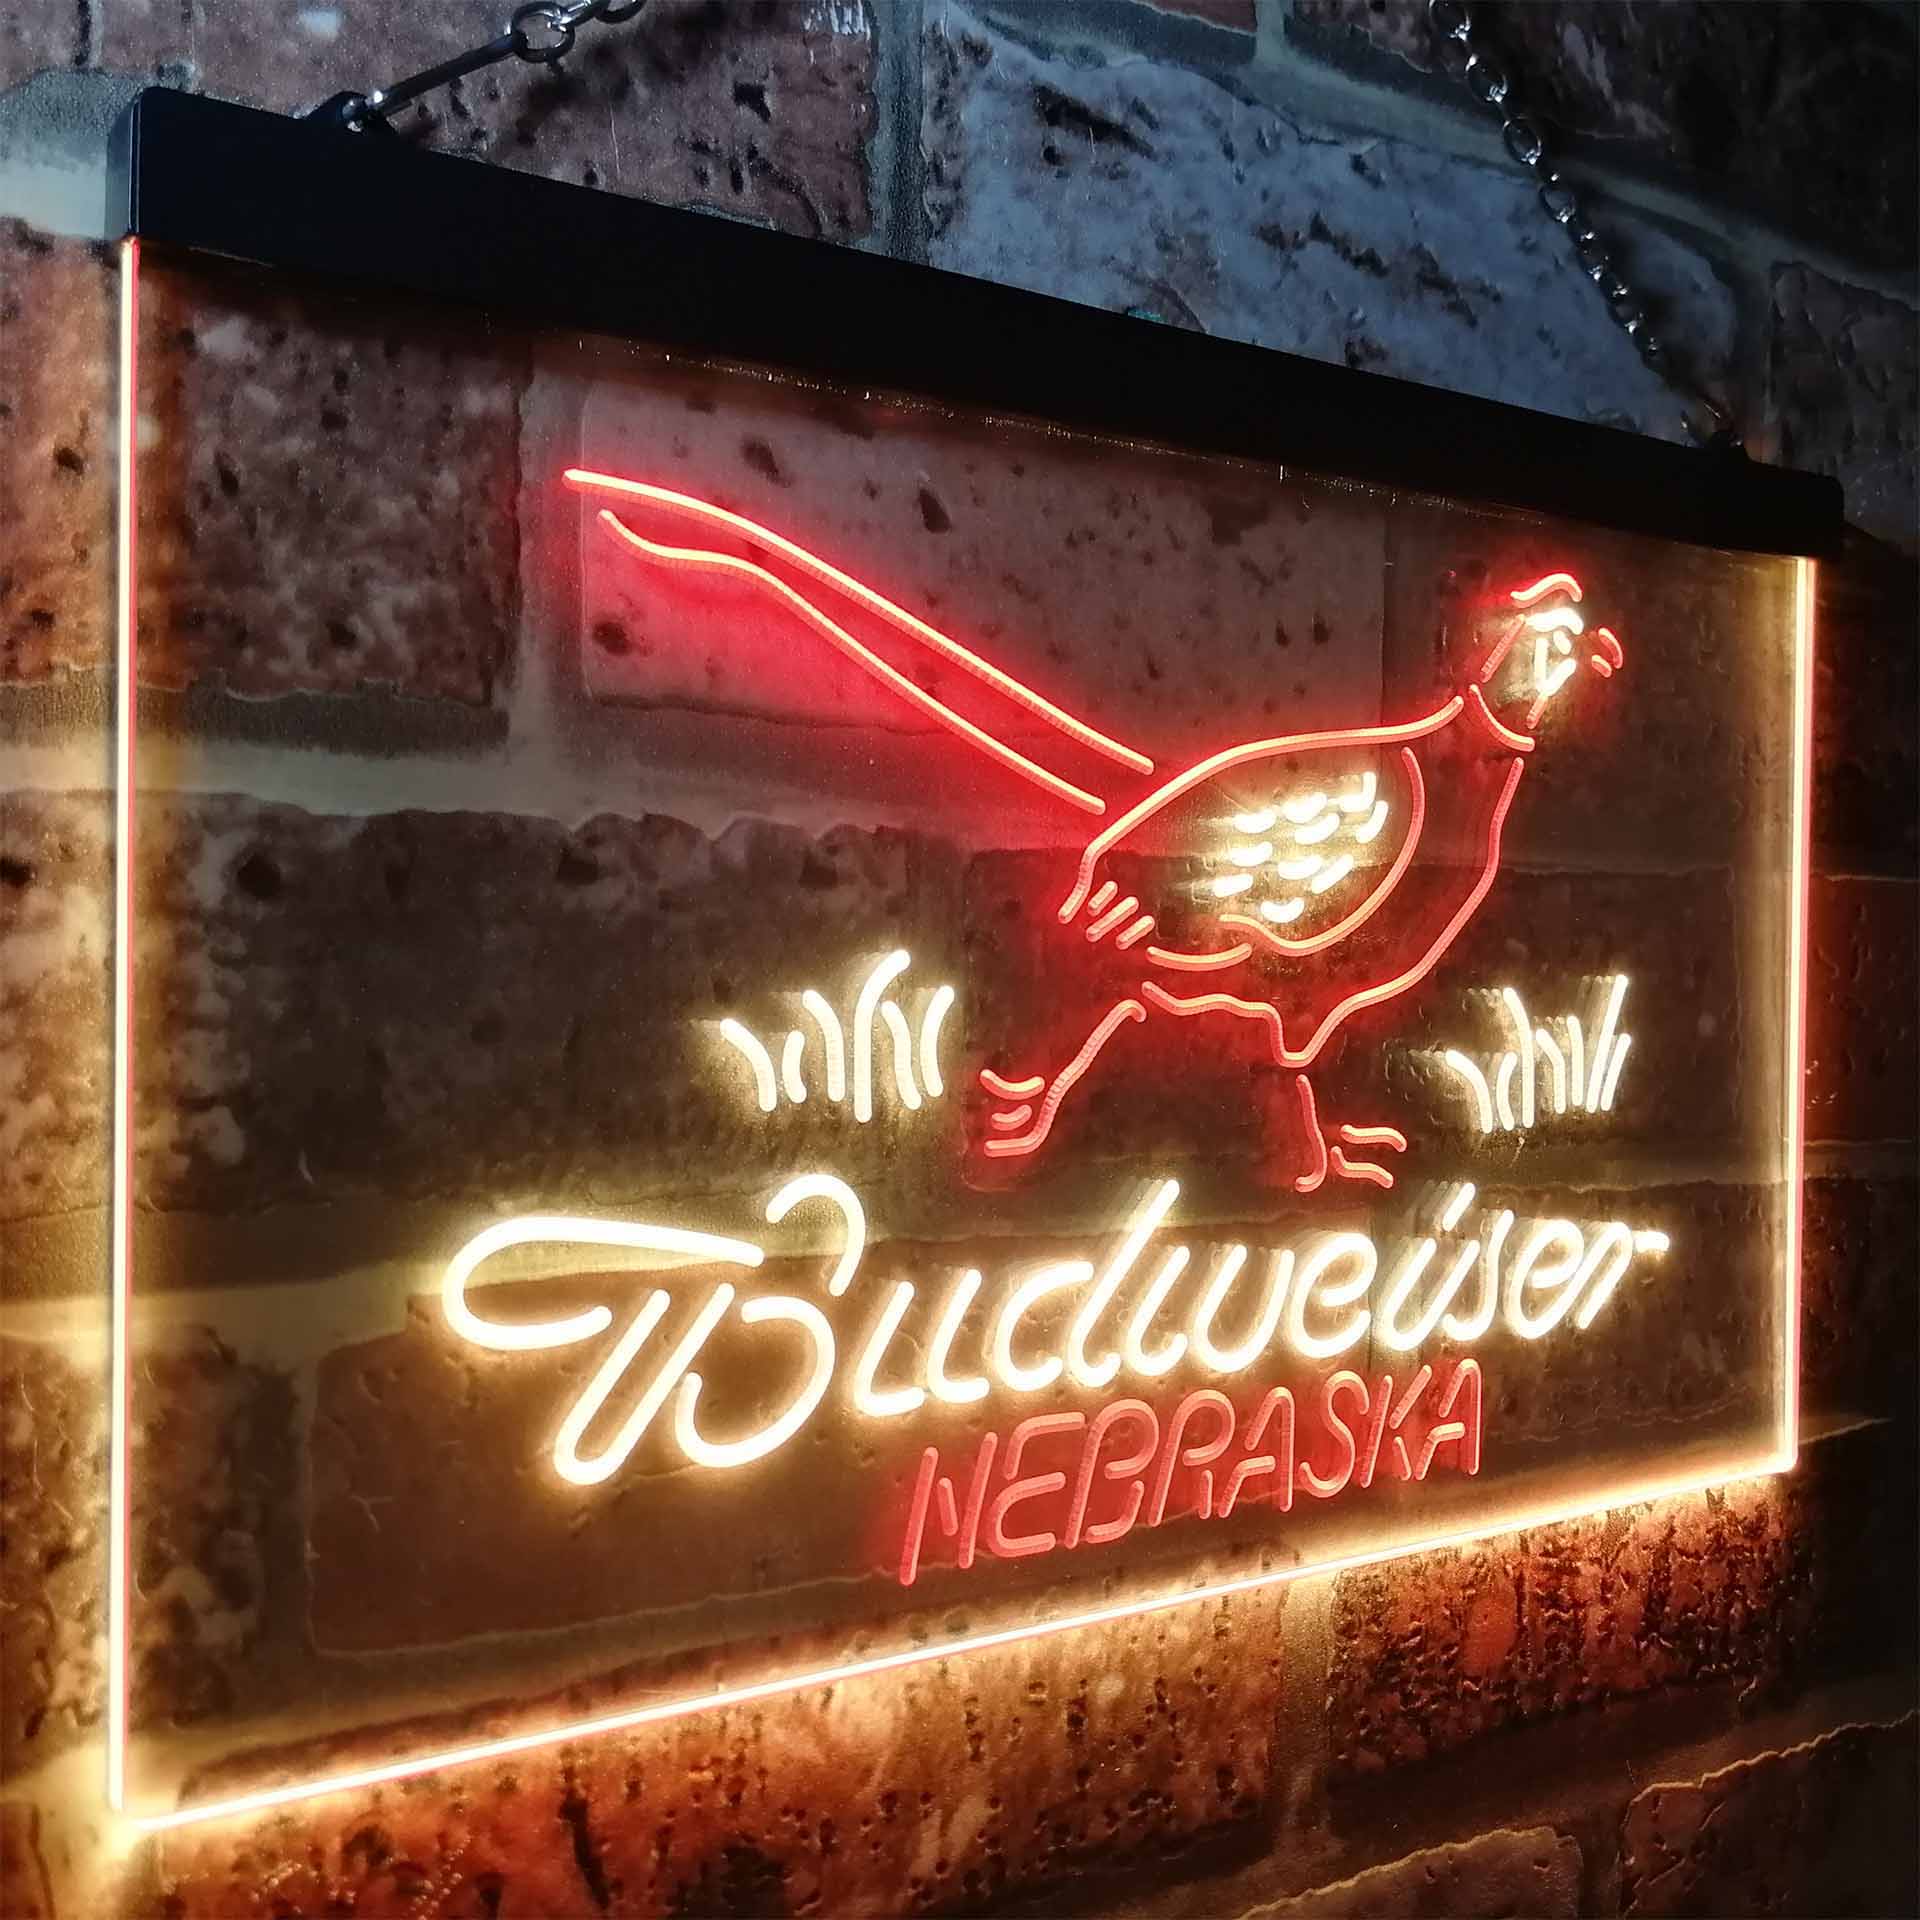 Nebraska Pheasant Hunter Budweiser's LED Neon Sign